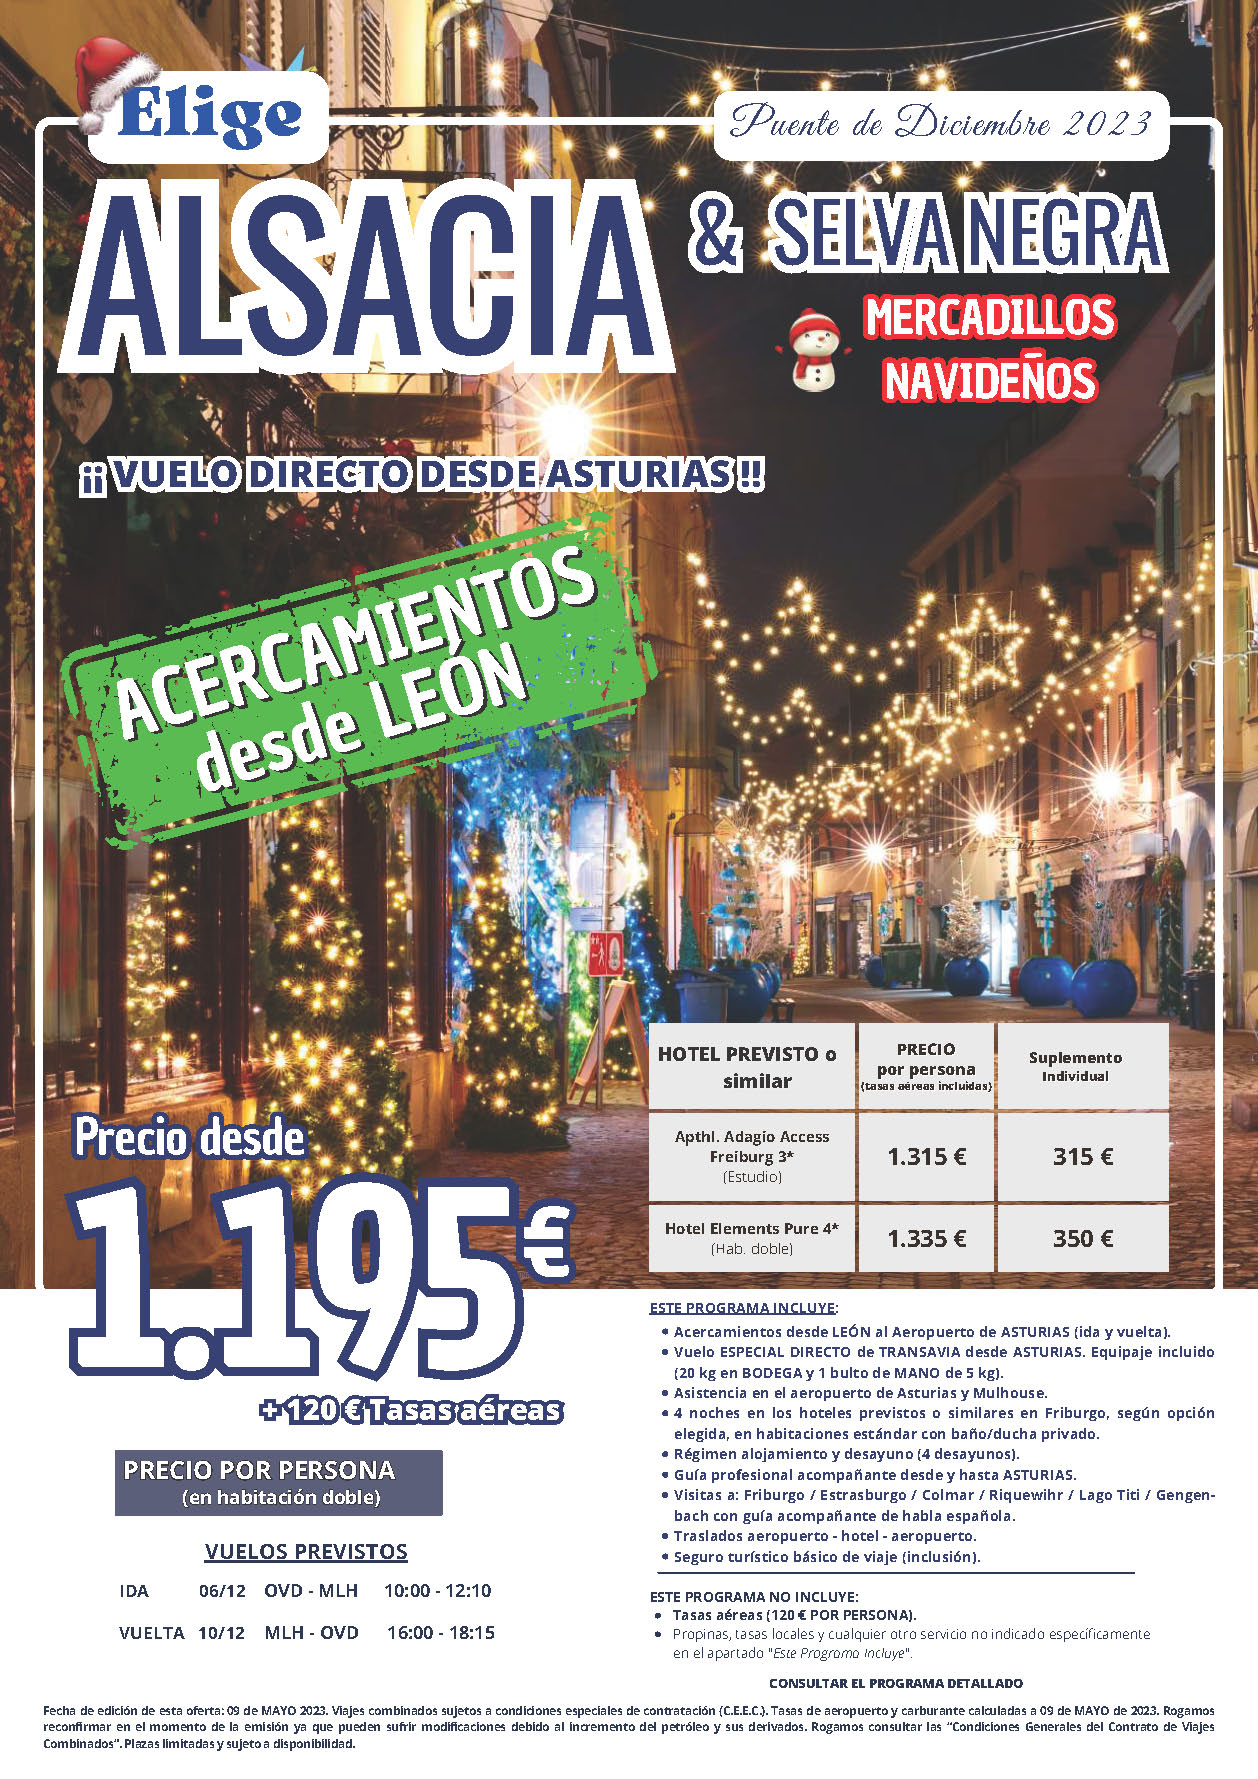 Oferta Elige tu Viaje Puente de Diciembre 2023 circuito Alsacia y Selva Negra 5 dias salida 6 diciembre vuelo especial directo desde Asturias acercamiento Leon